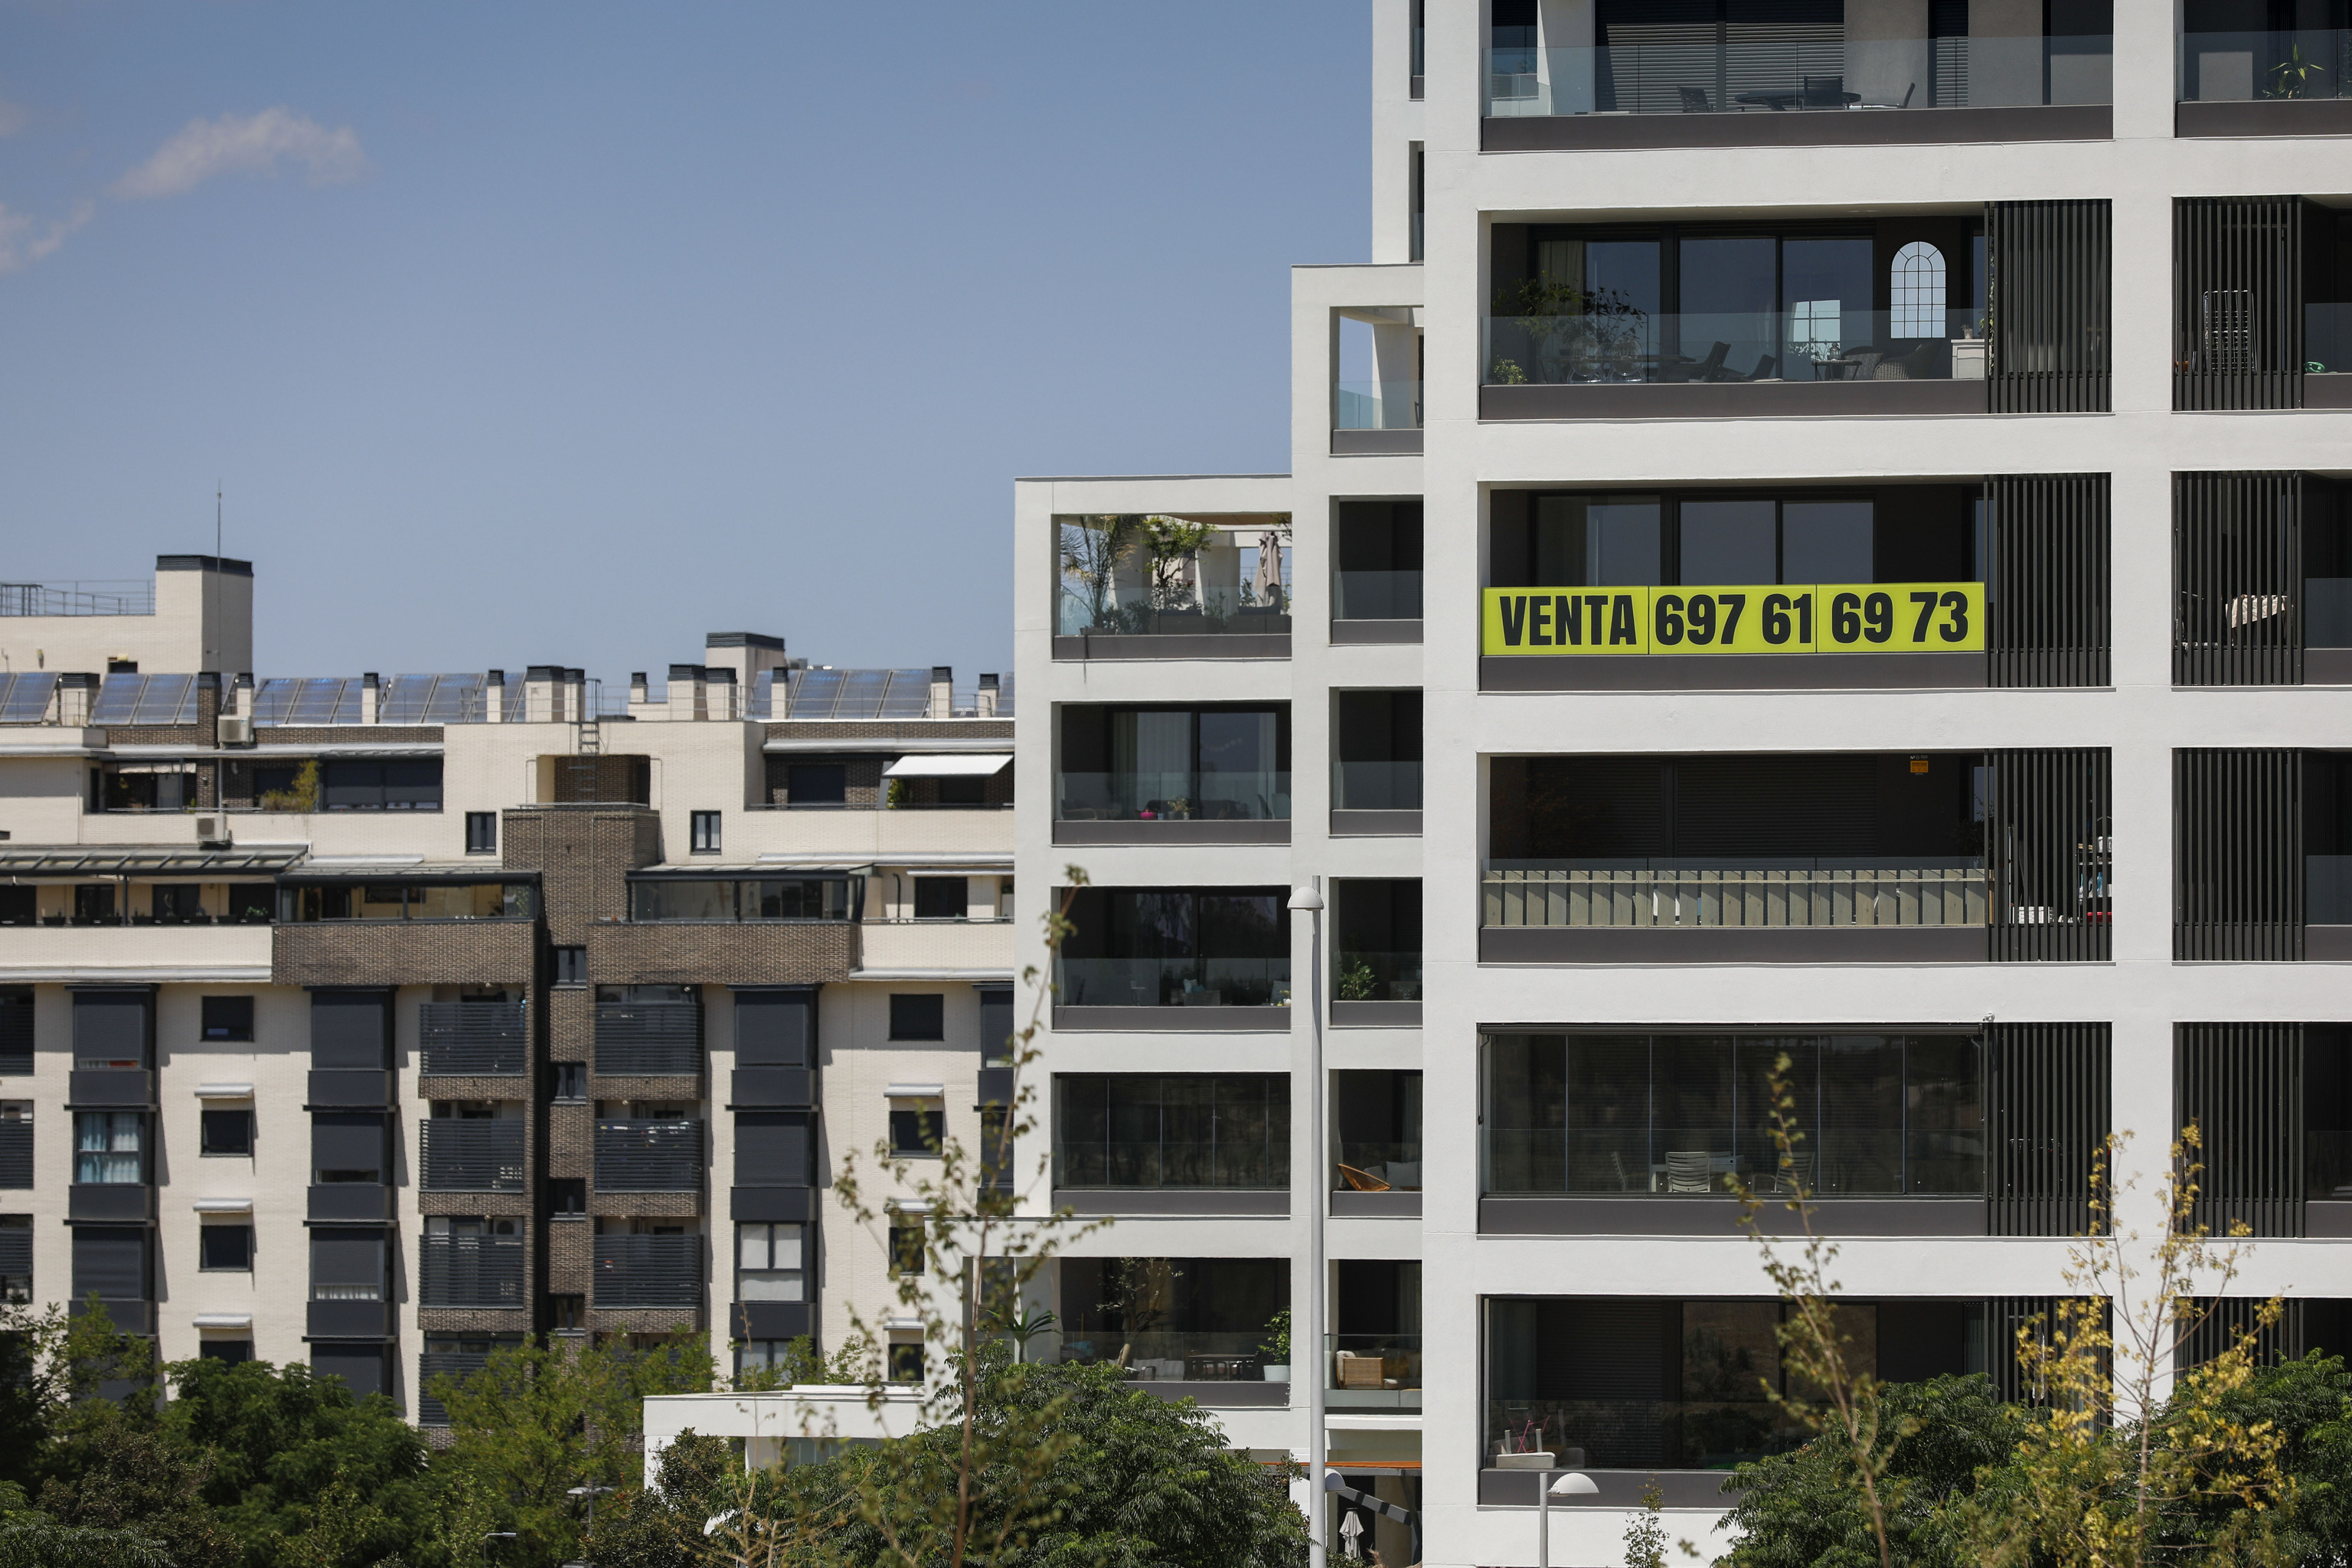 Bloque de viviendas en venta en Madrid.